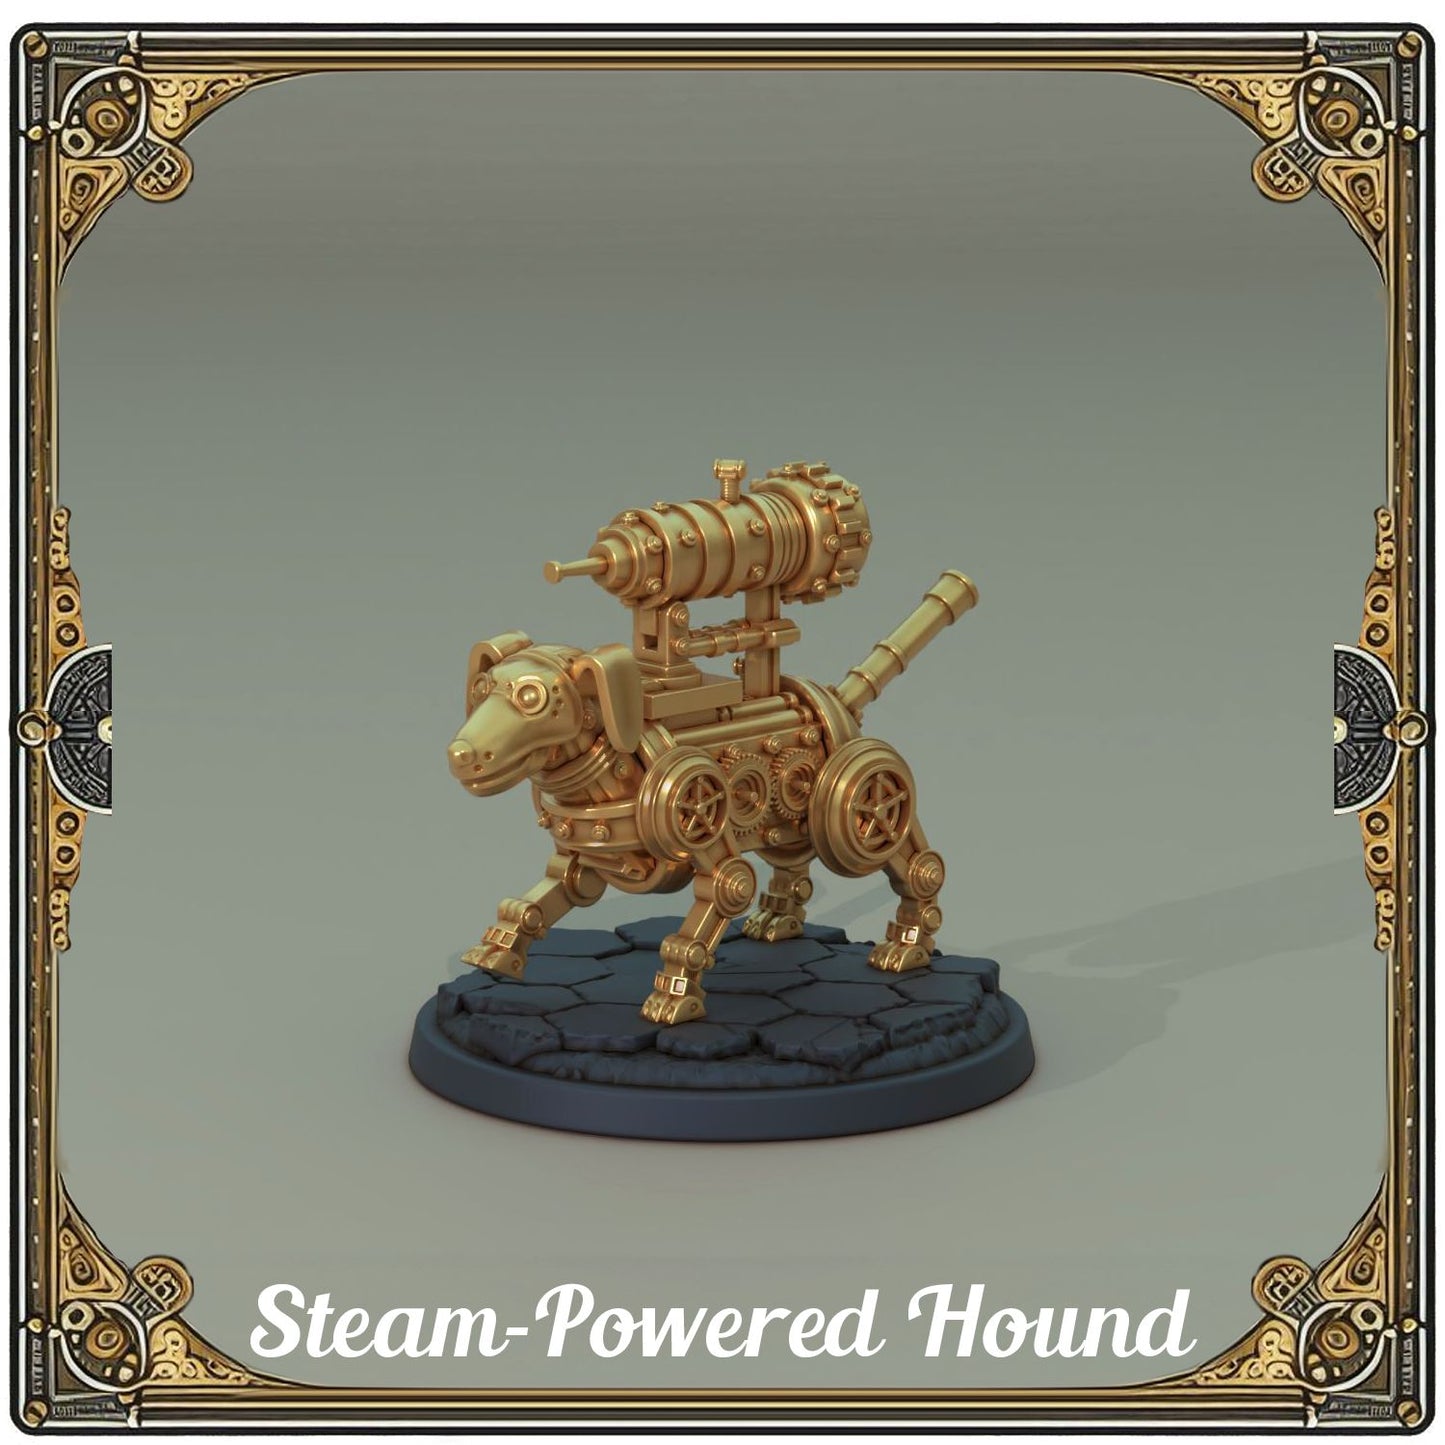 Steam-Powered Hound